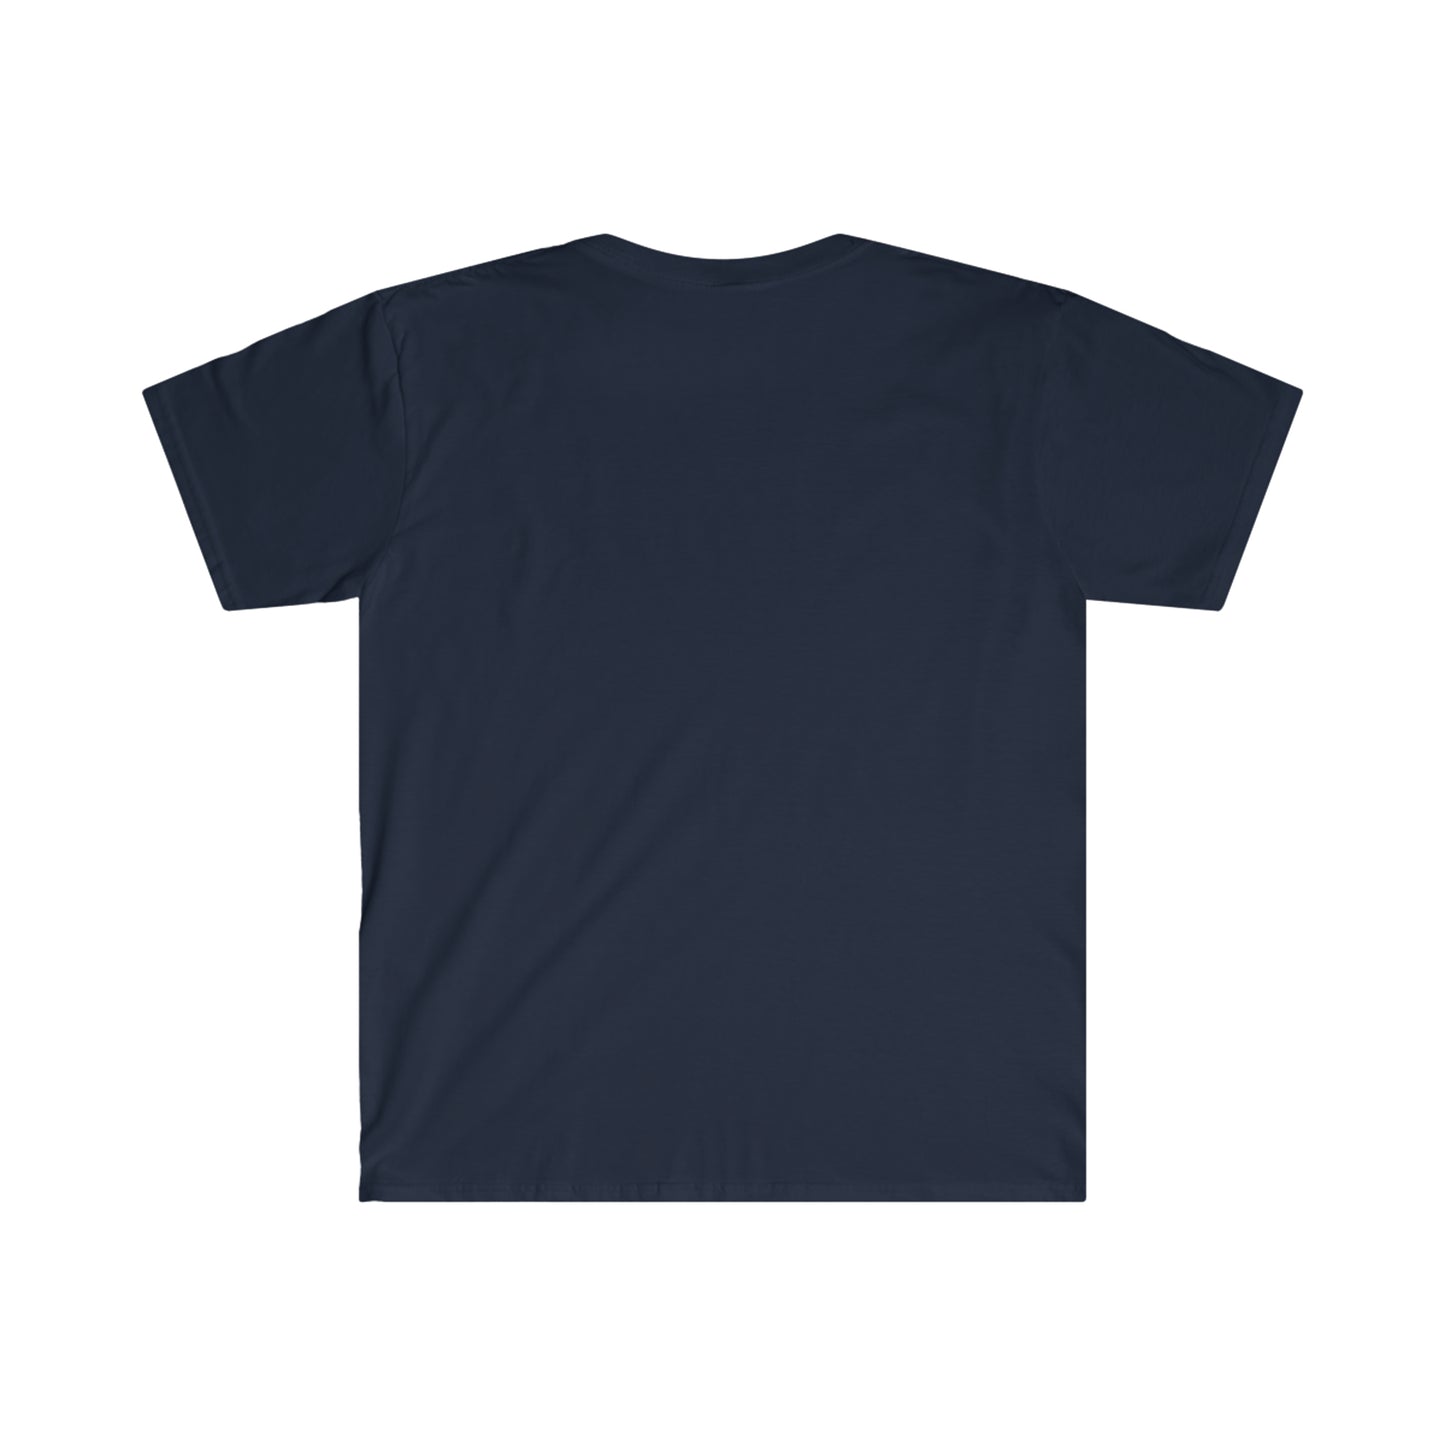 Narc'd Reef Unisex T-Shirt